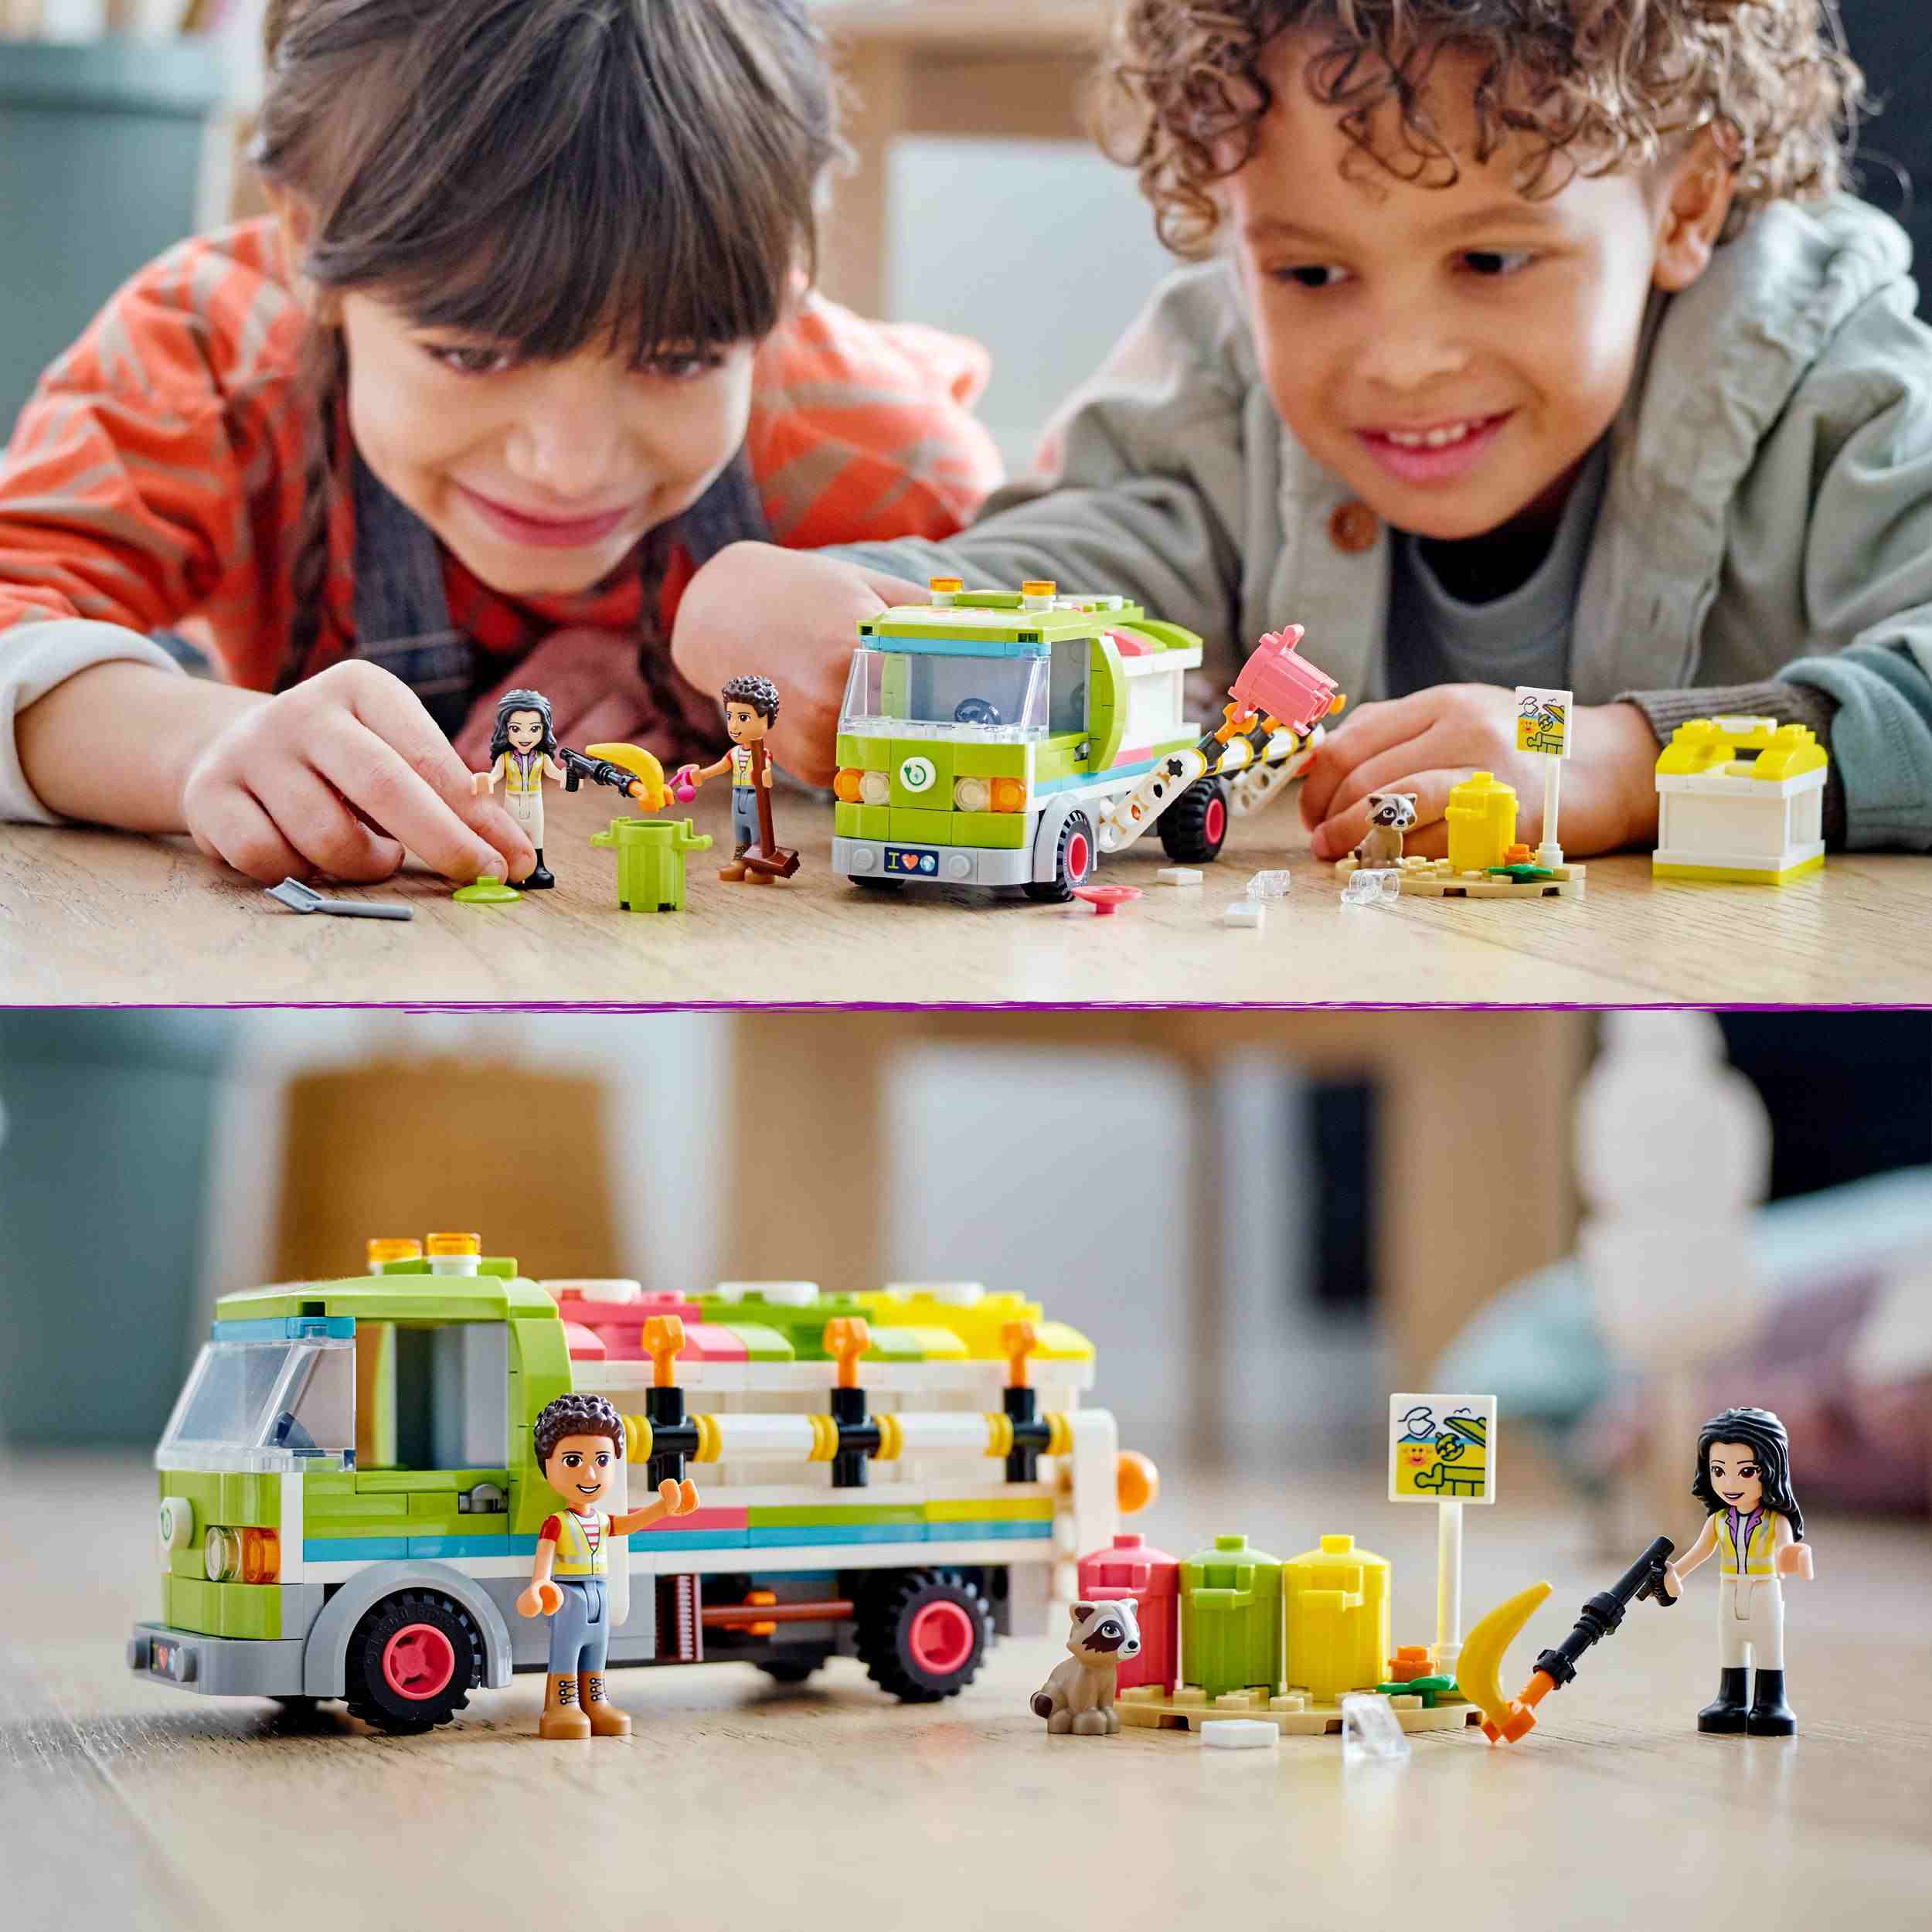 Lego friends 41712 camion riciclaggio rifiuti, mini bambolina emma, nettezza urbana giocattolo, giochi per bambini dai 6 anni - LEGO FRIENDS, Lego